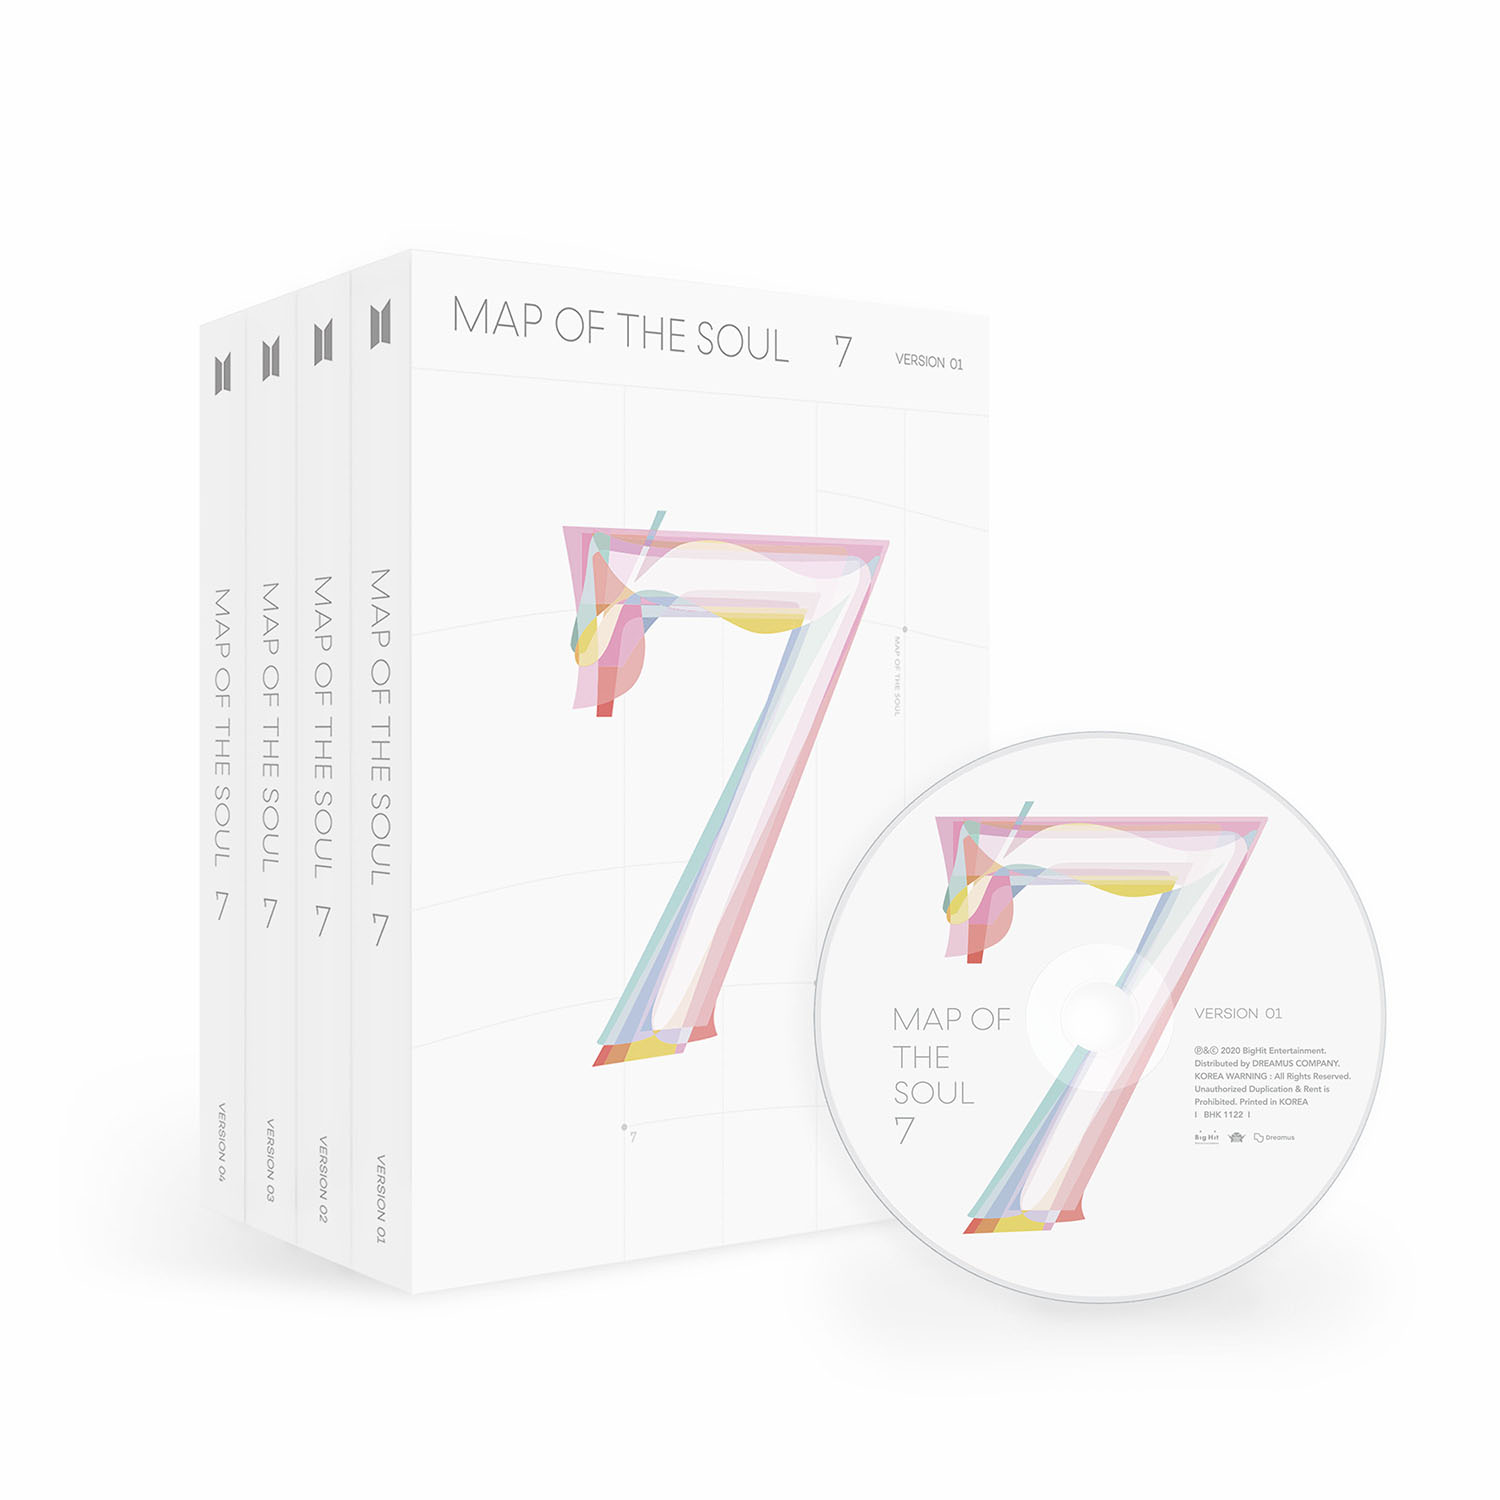 방탄소년단(BTS) - 앨범 [MAP OF THE SOUL 7] (랜덤버전)케이팝스토어(kpop store)